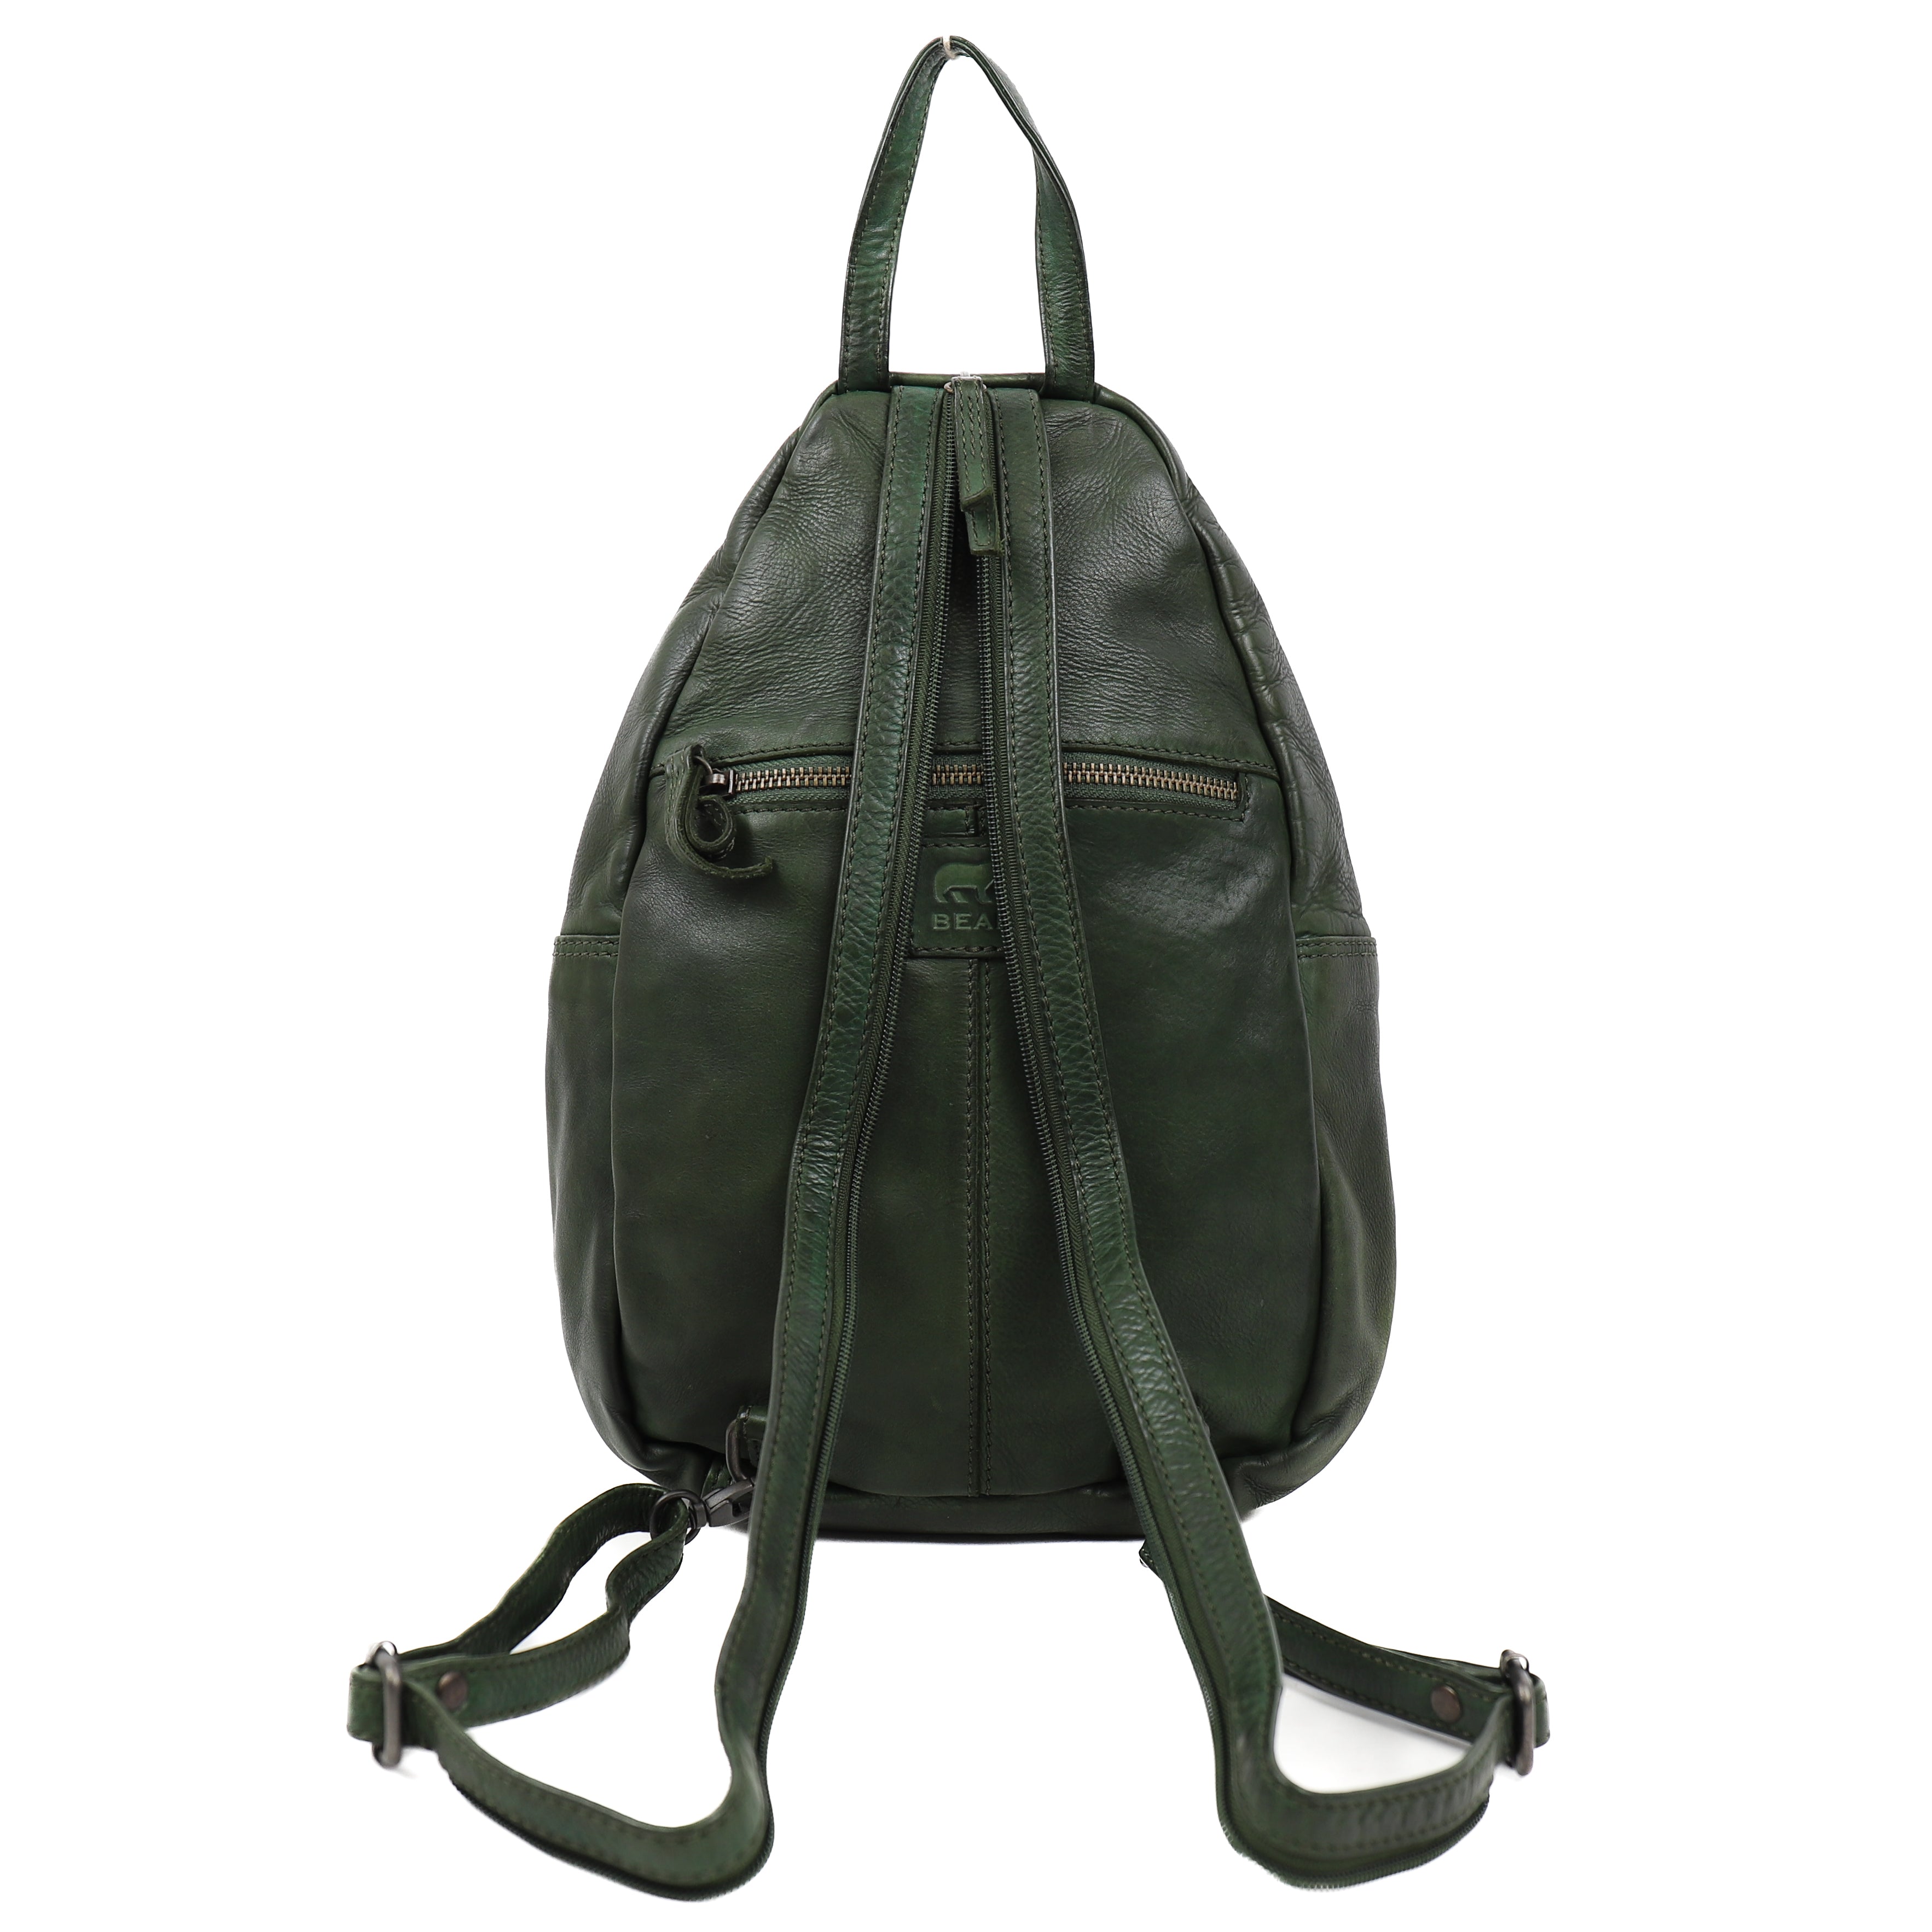 Backpack 'Joy' olive green - CL 36413